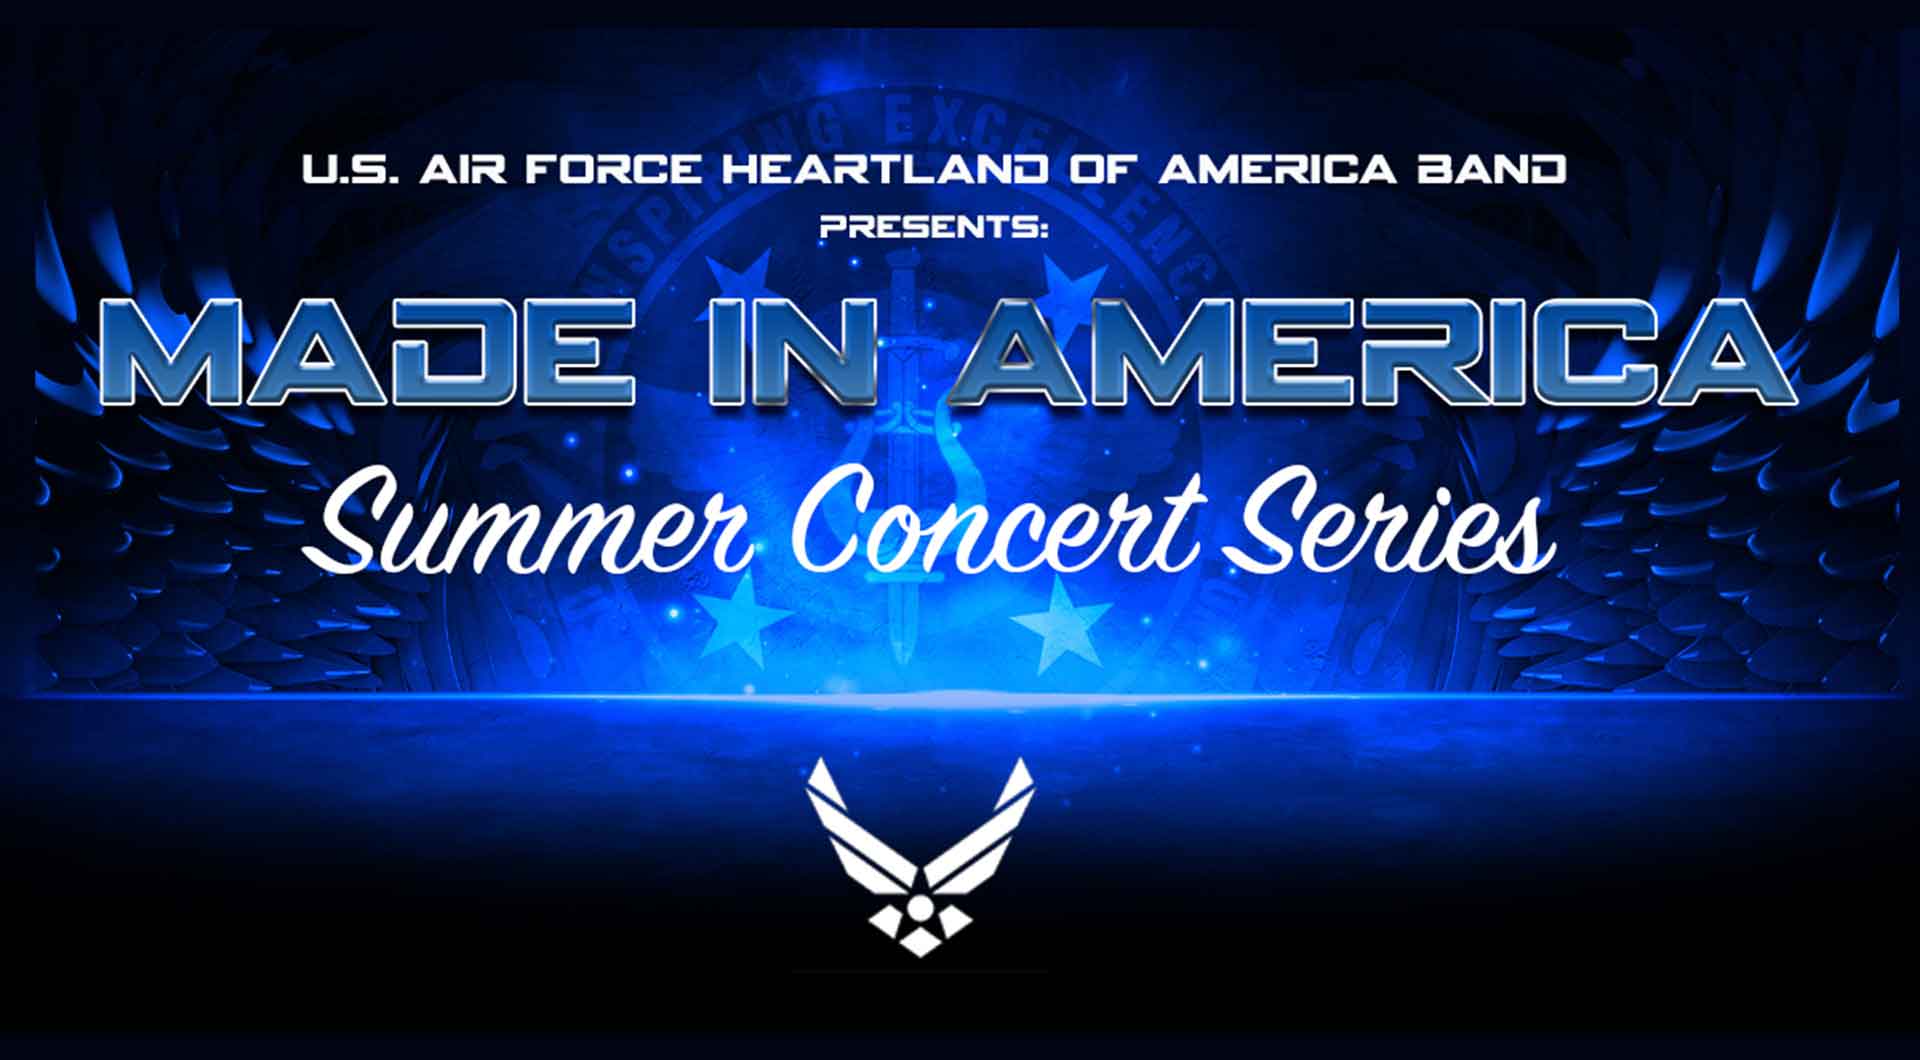 U.S. Air Force Heartland of America Band Presents Made in America